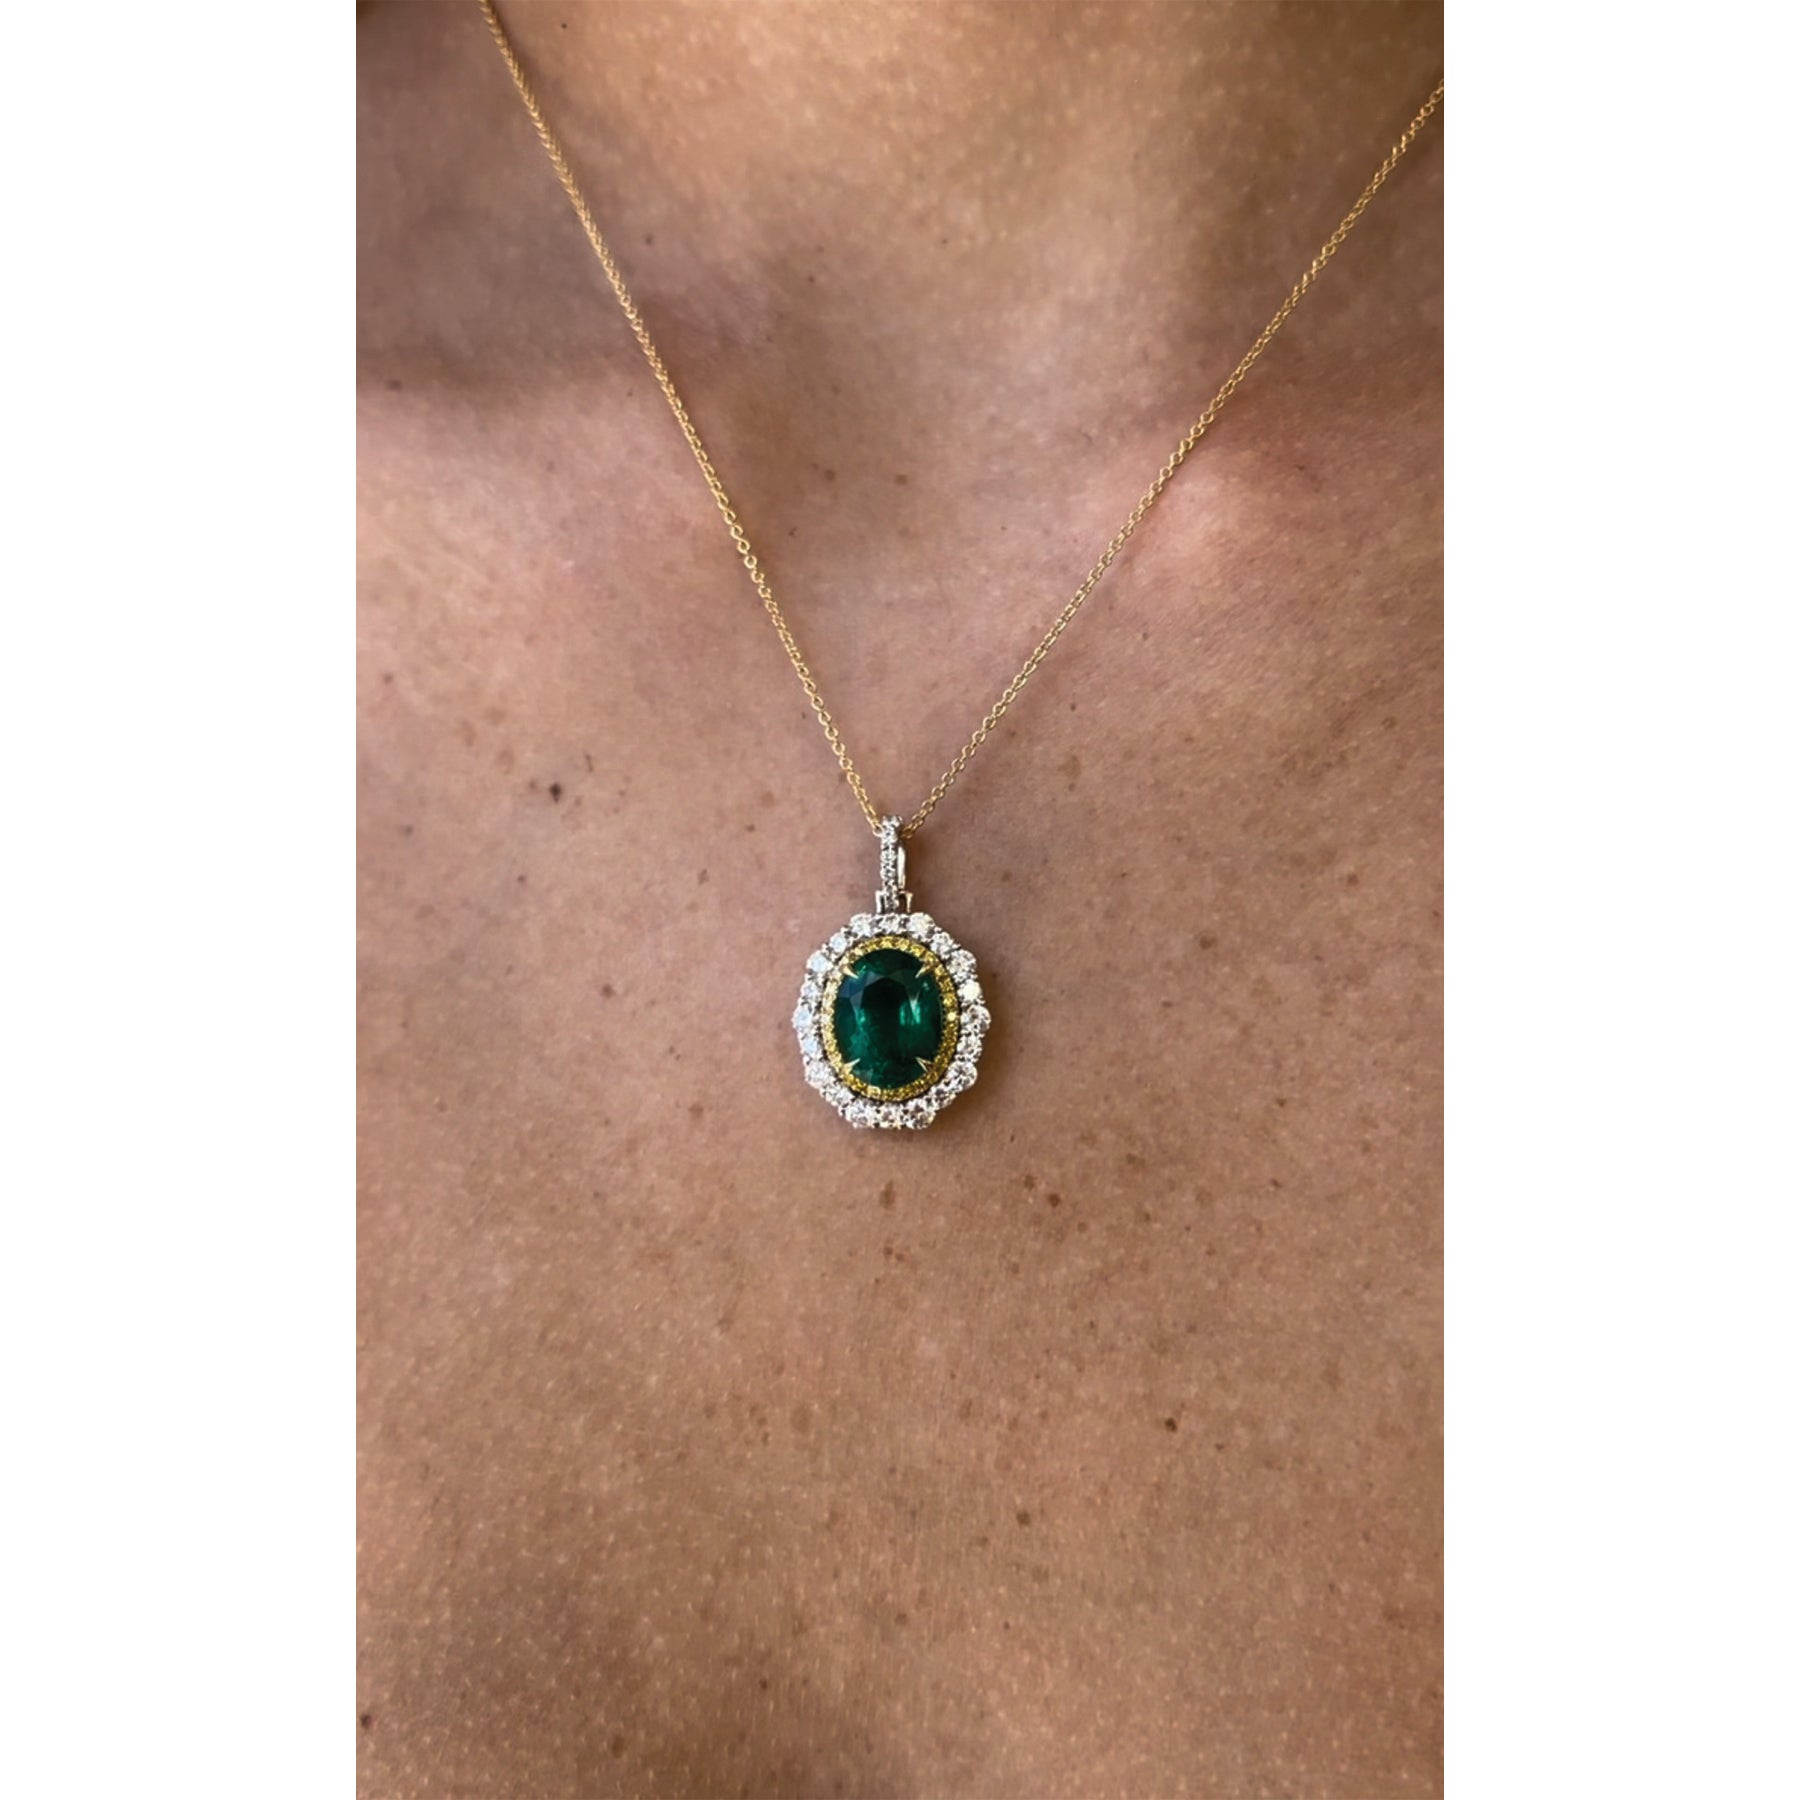 18K 5.27 Ct Oval Cut Zambian Green Emerald and Diamond Pendant